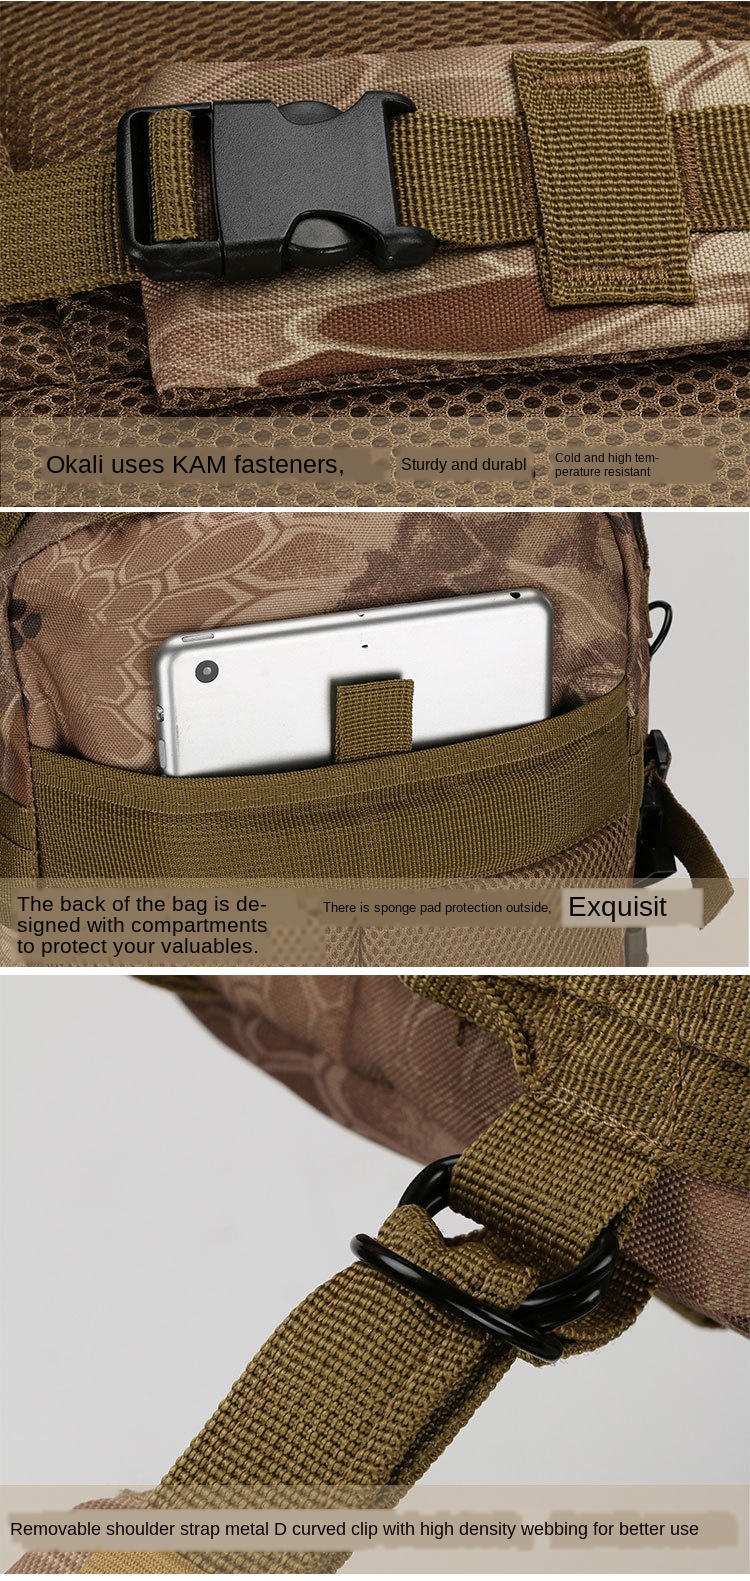 Спортивный походный рюкзак Lawaia, Тактический Военный Ранец для активного отдыха, походов, охоты, 30 л